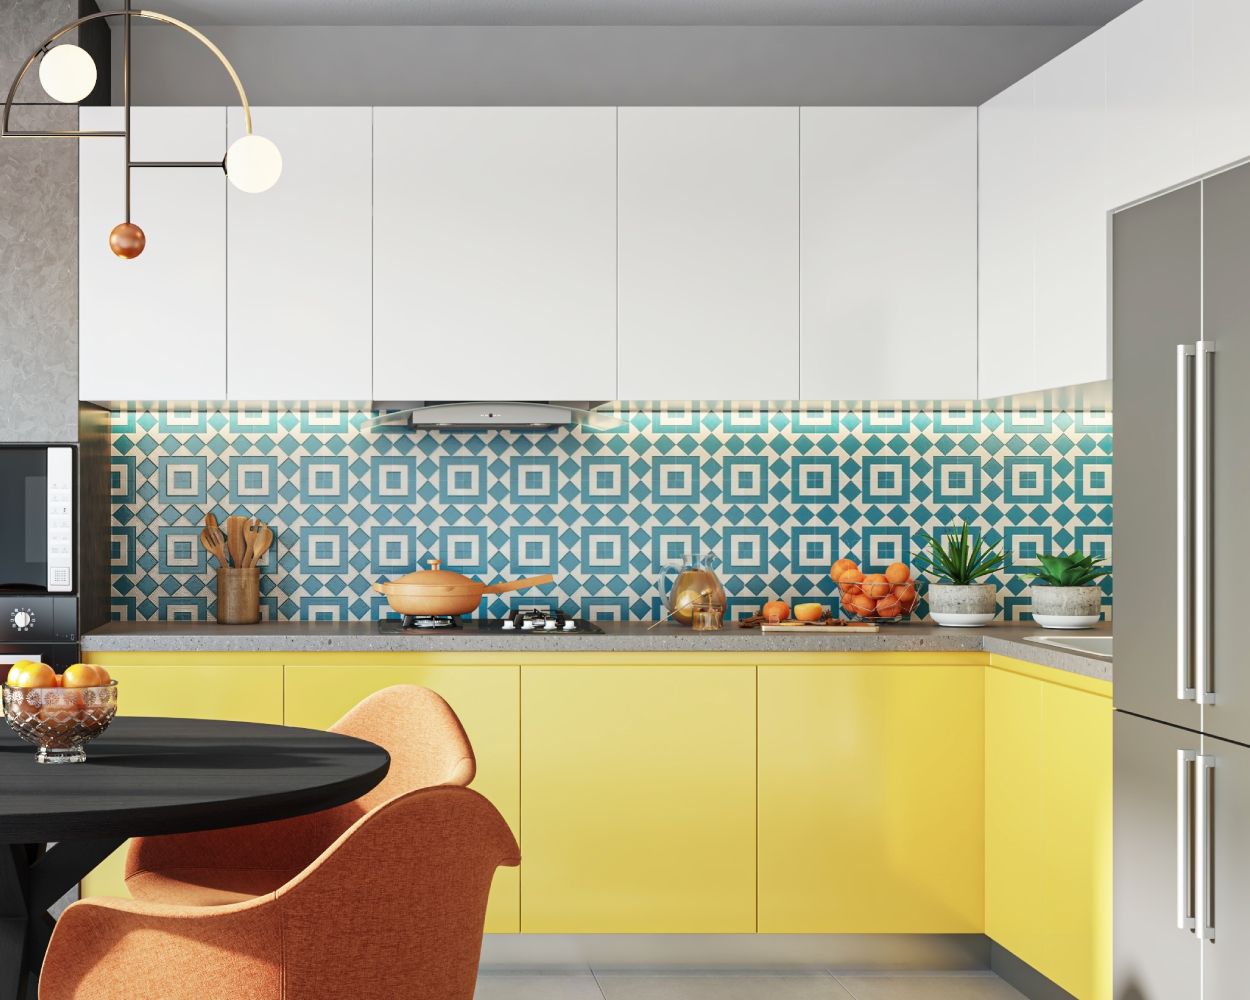 Modern Blue And White High Gloss Ceramic Kitchen Tile Design